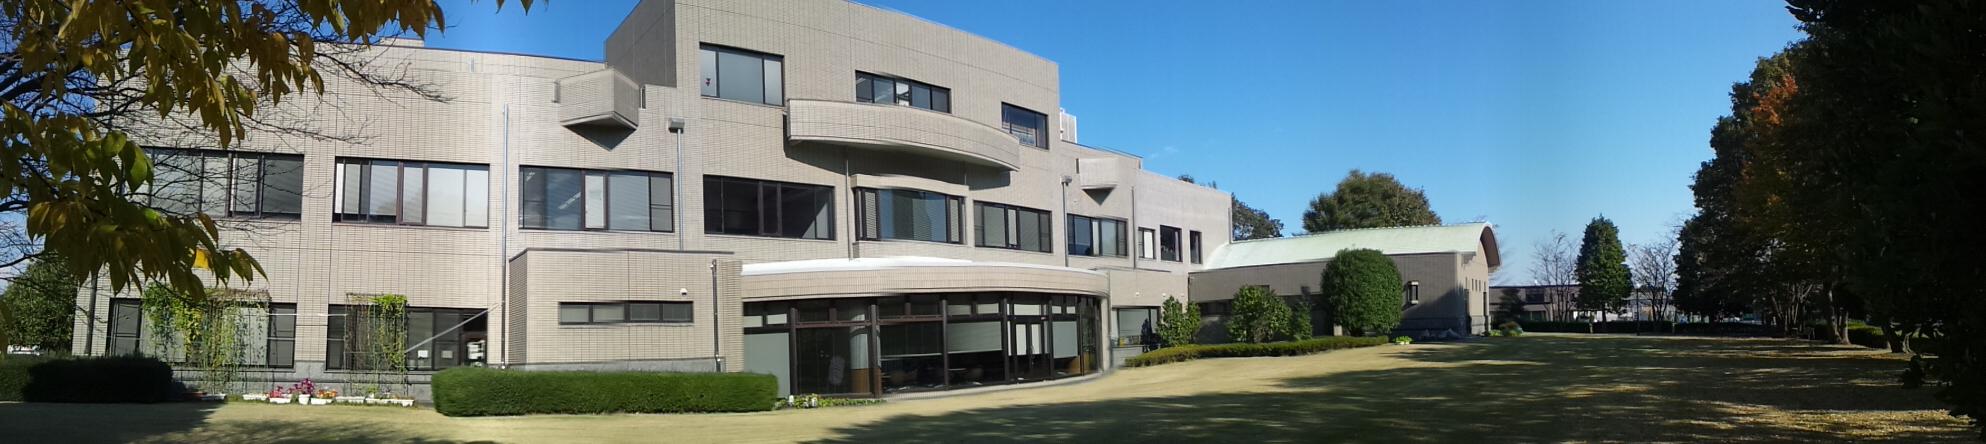  水戸市総合教育研究所